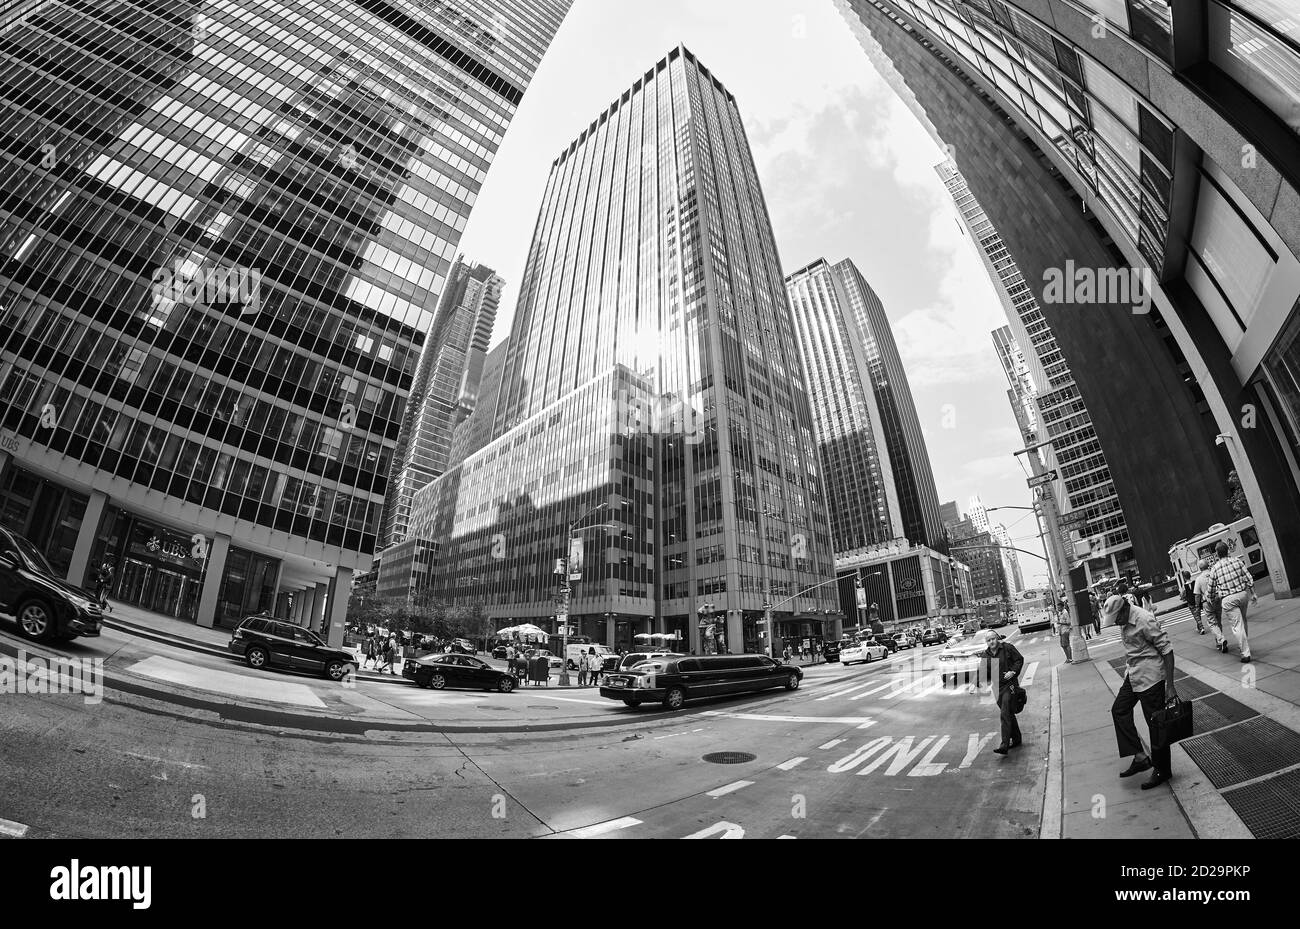 New York, USA - 17 agosto 2015: Immagine in bianco e nero con lenti fisheye del paesaggio urbano di Manhattan. Foto Stock